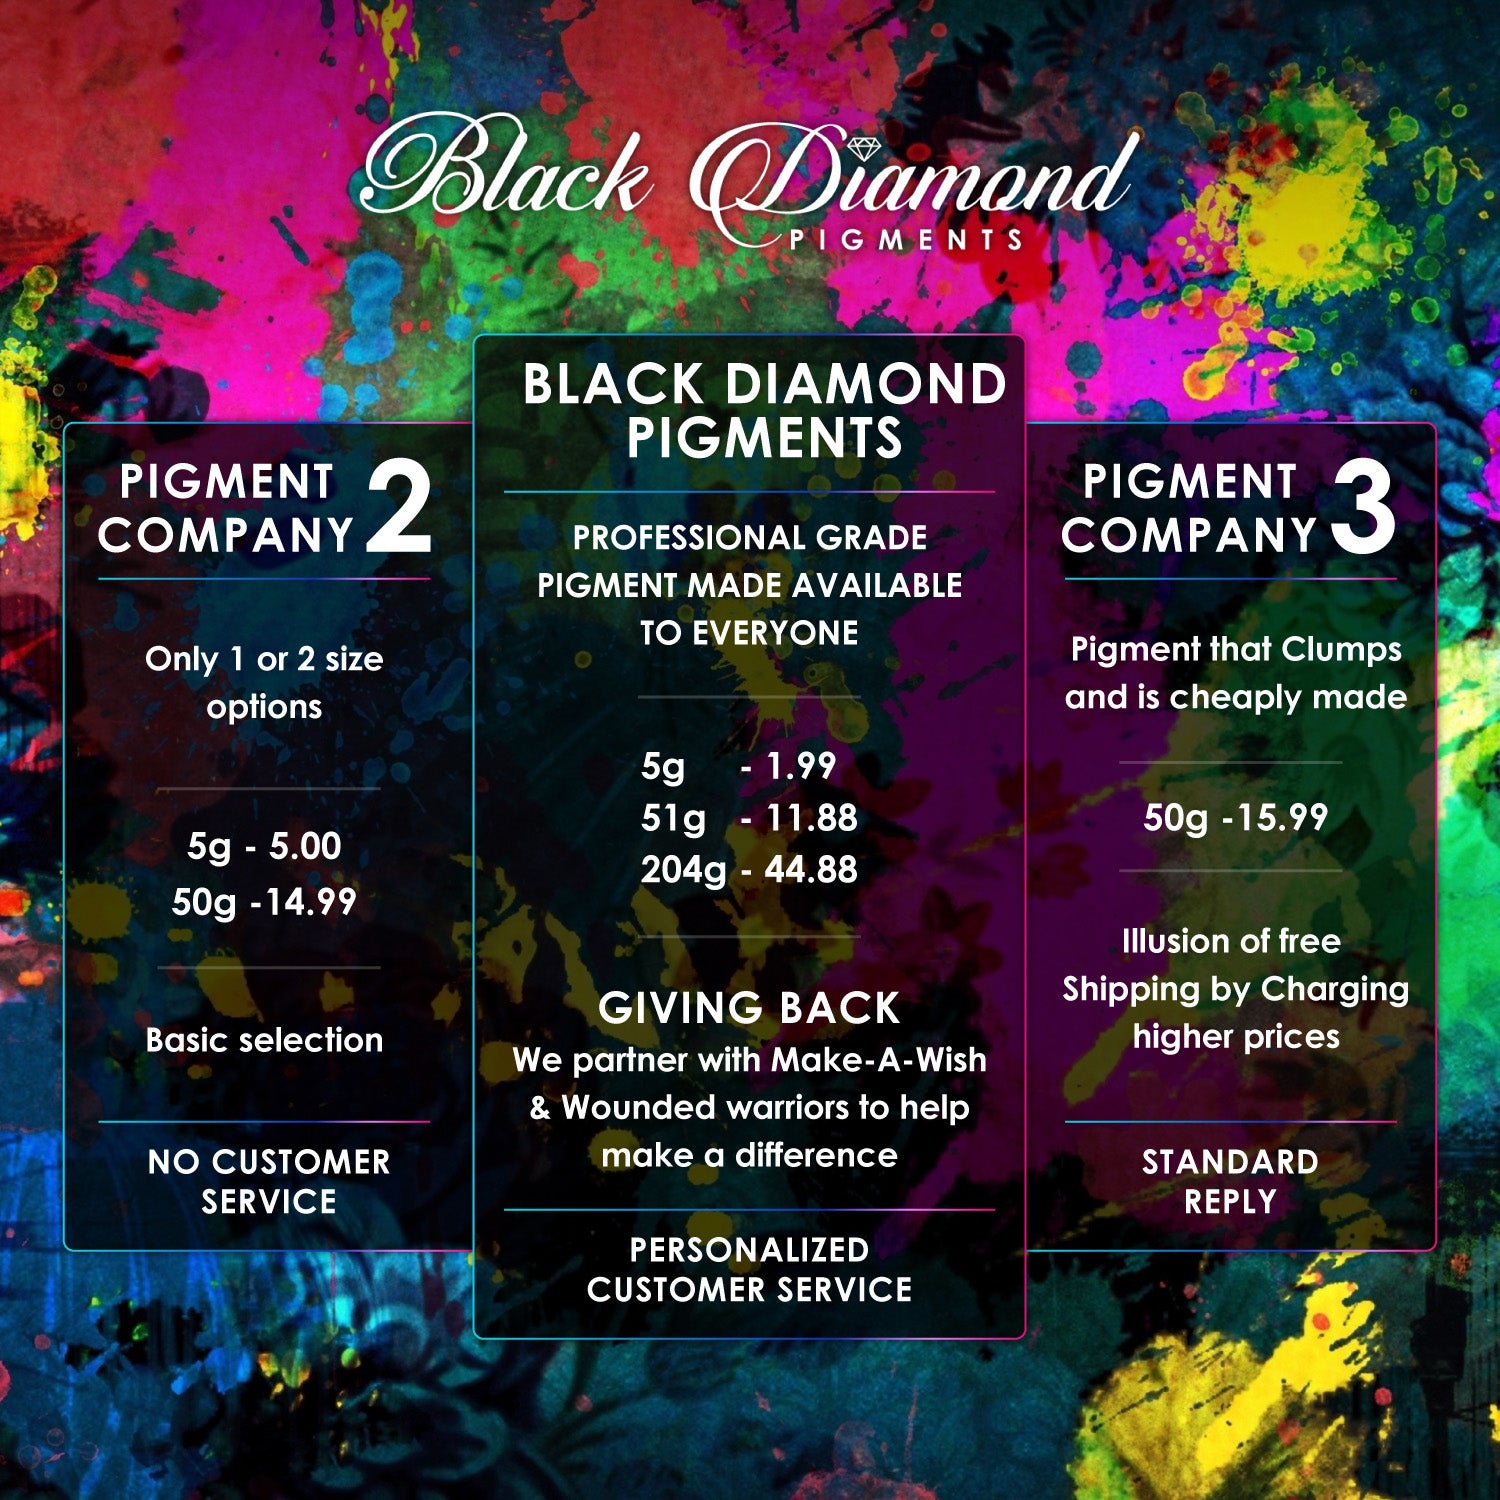 SCARLET - Black Diamond Pigment Poudre Mica par Le Resineur